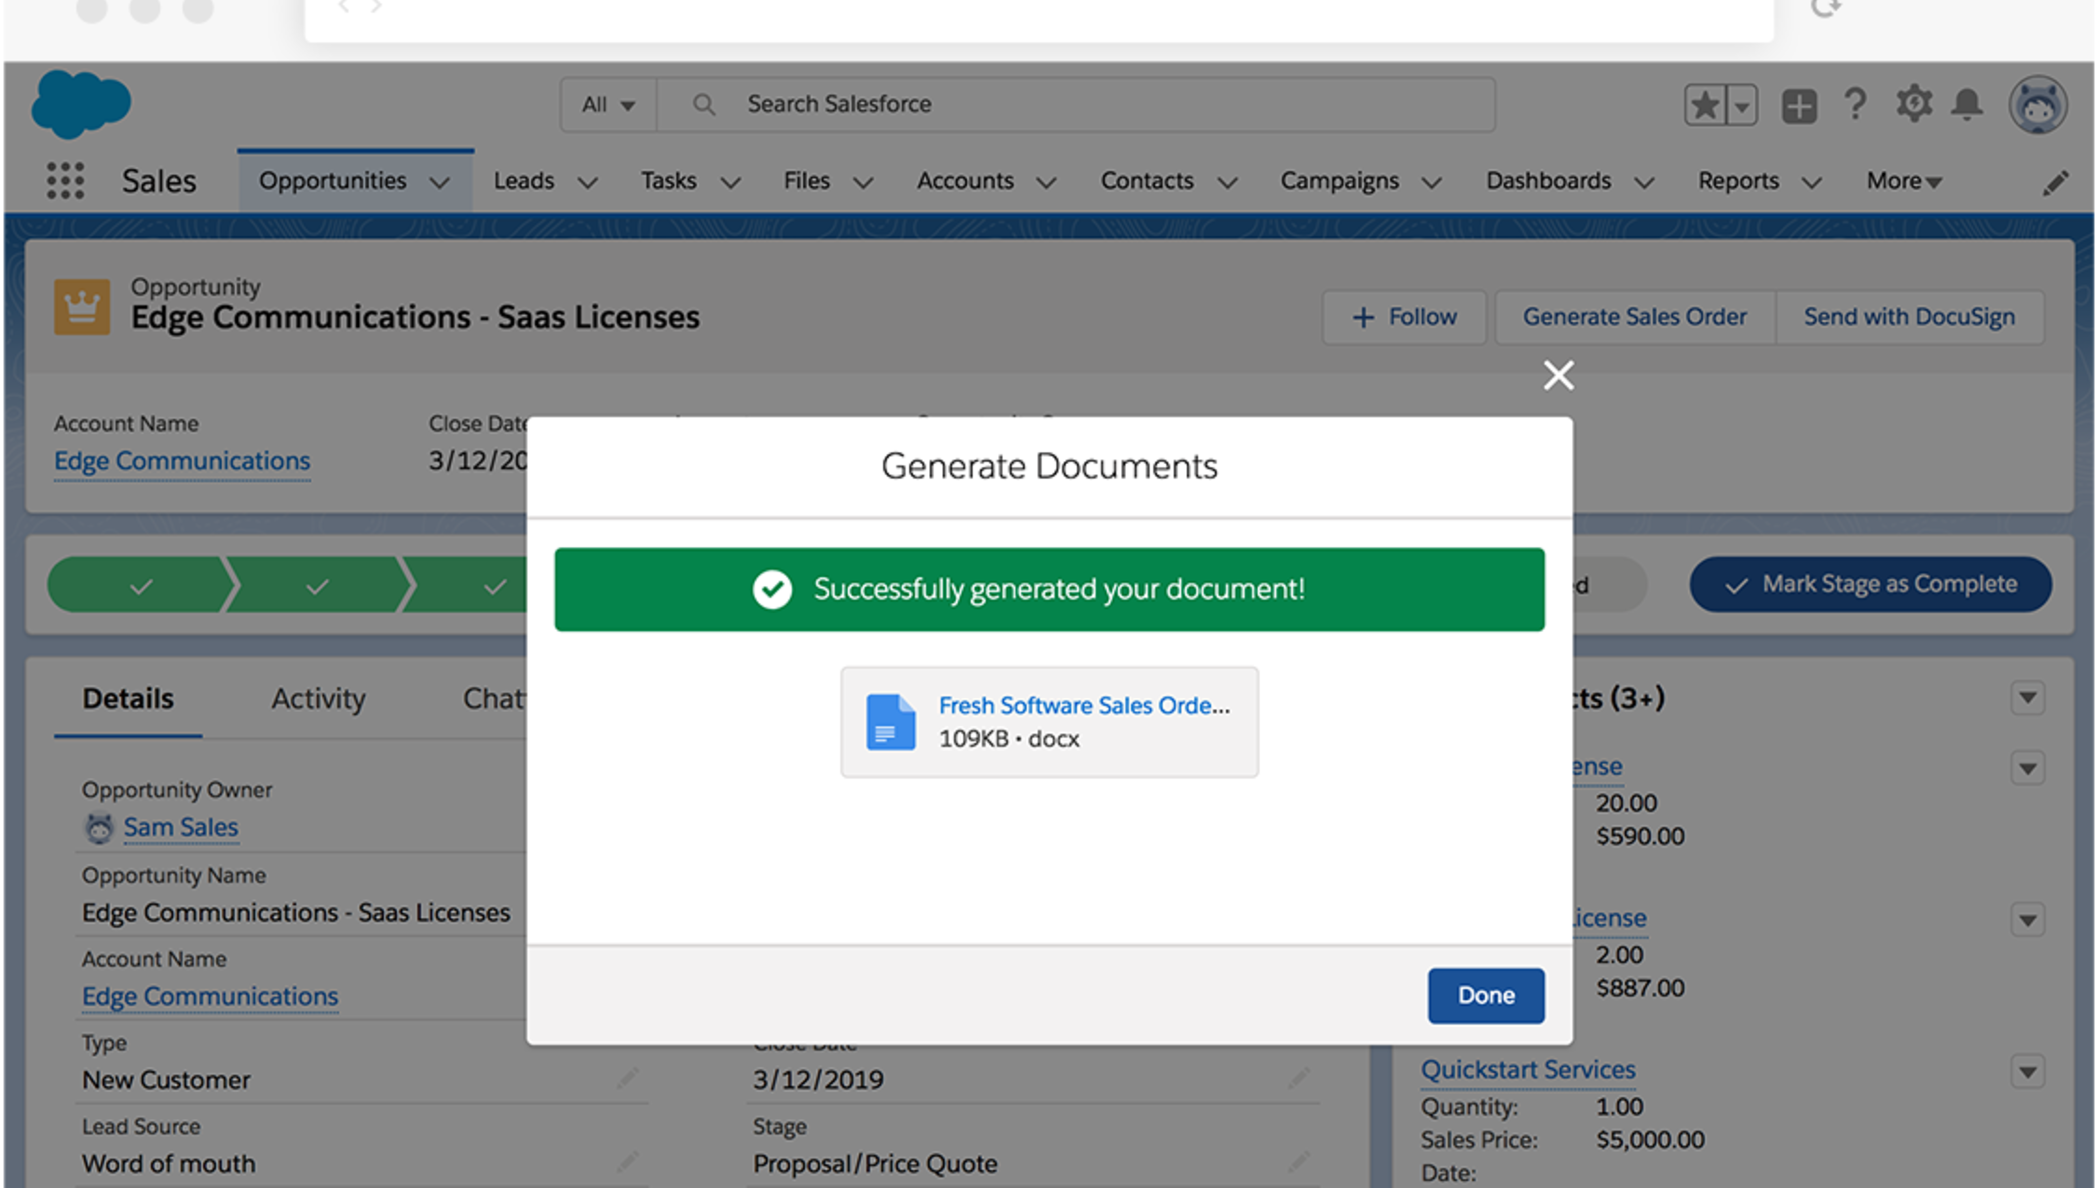  Um pop-up na interface do Salesforce avisa que "Gerou seu documento com sucesso!"